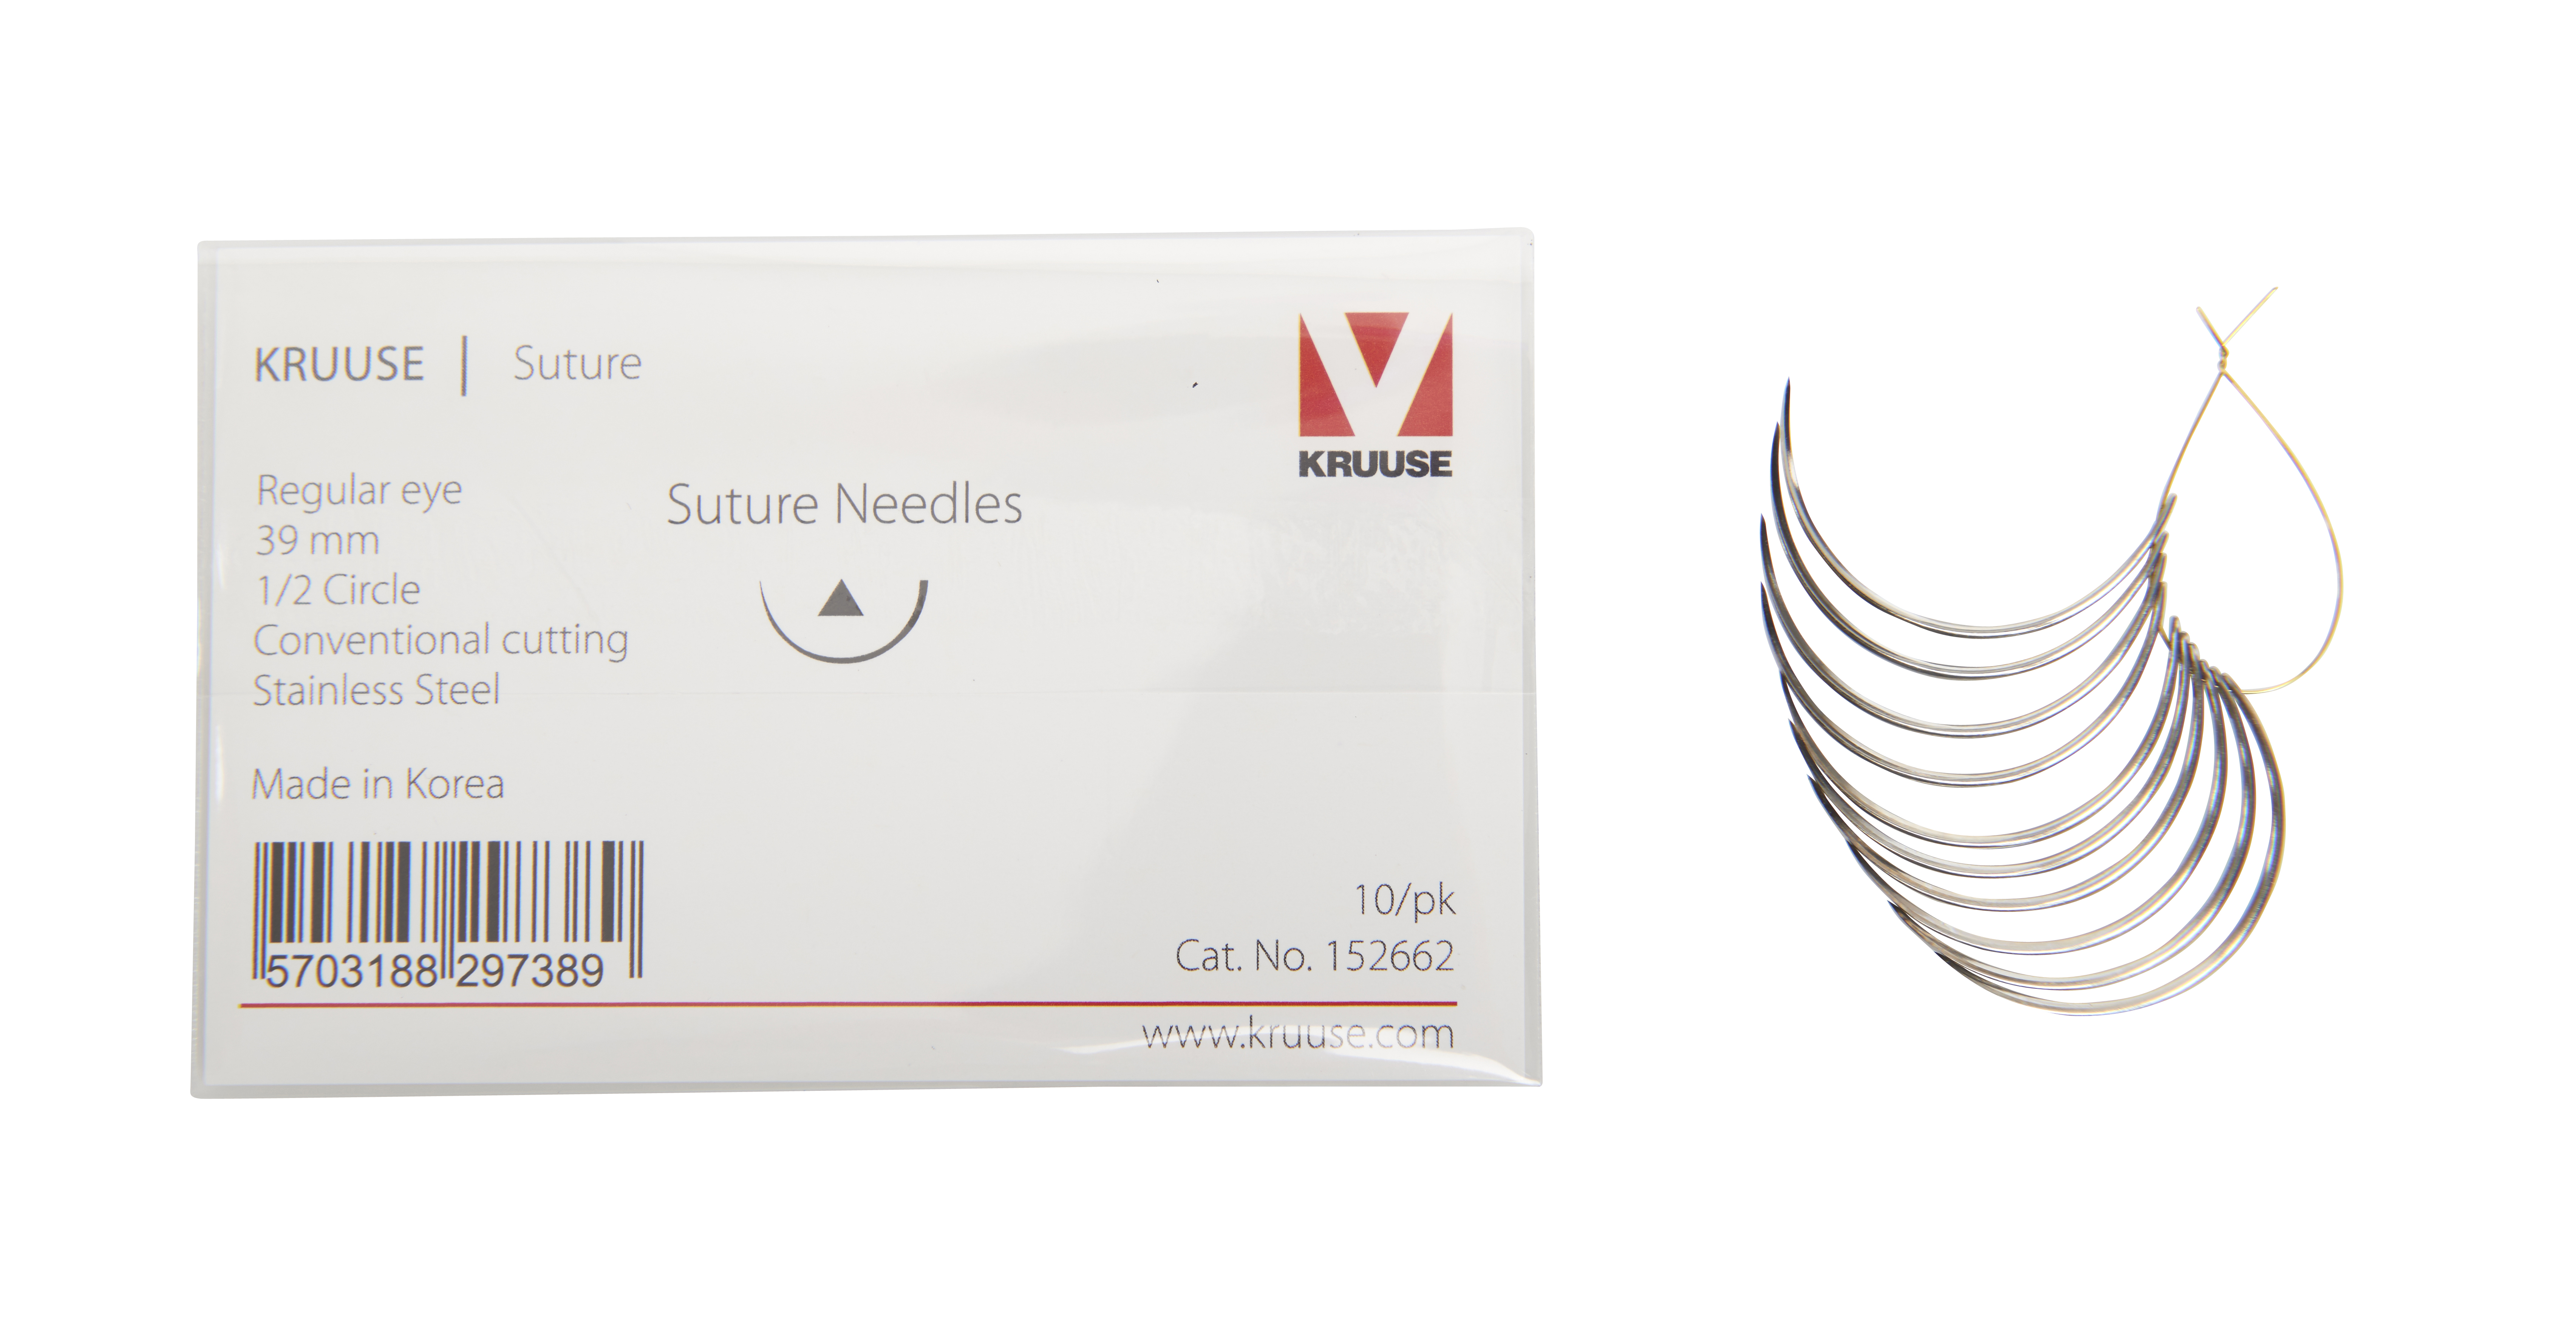 KRUUSE Suture Needle, regular eye, ½ circle, conventional cutting, 39 mm, 10/pk